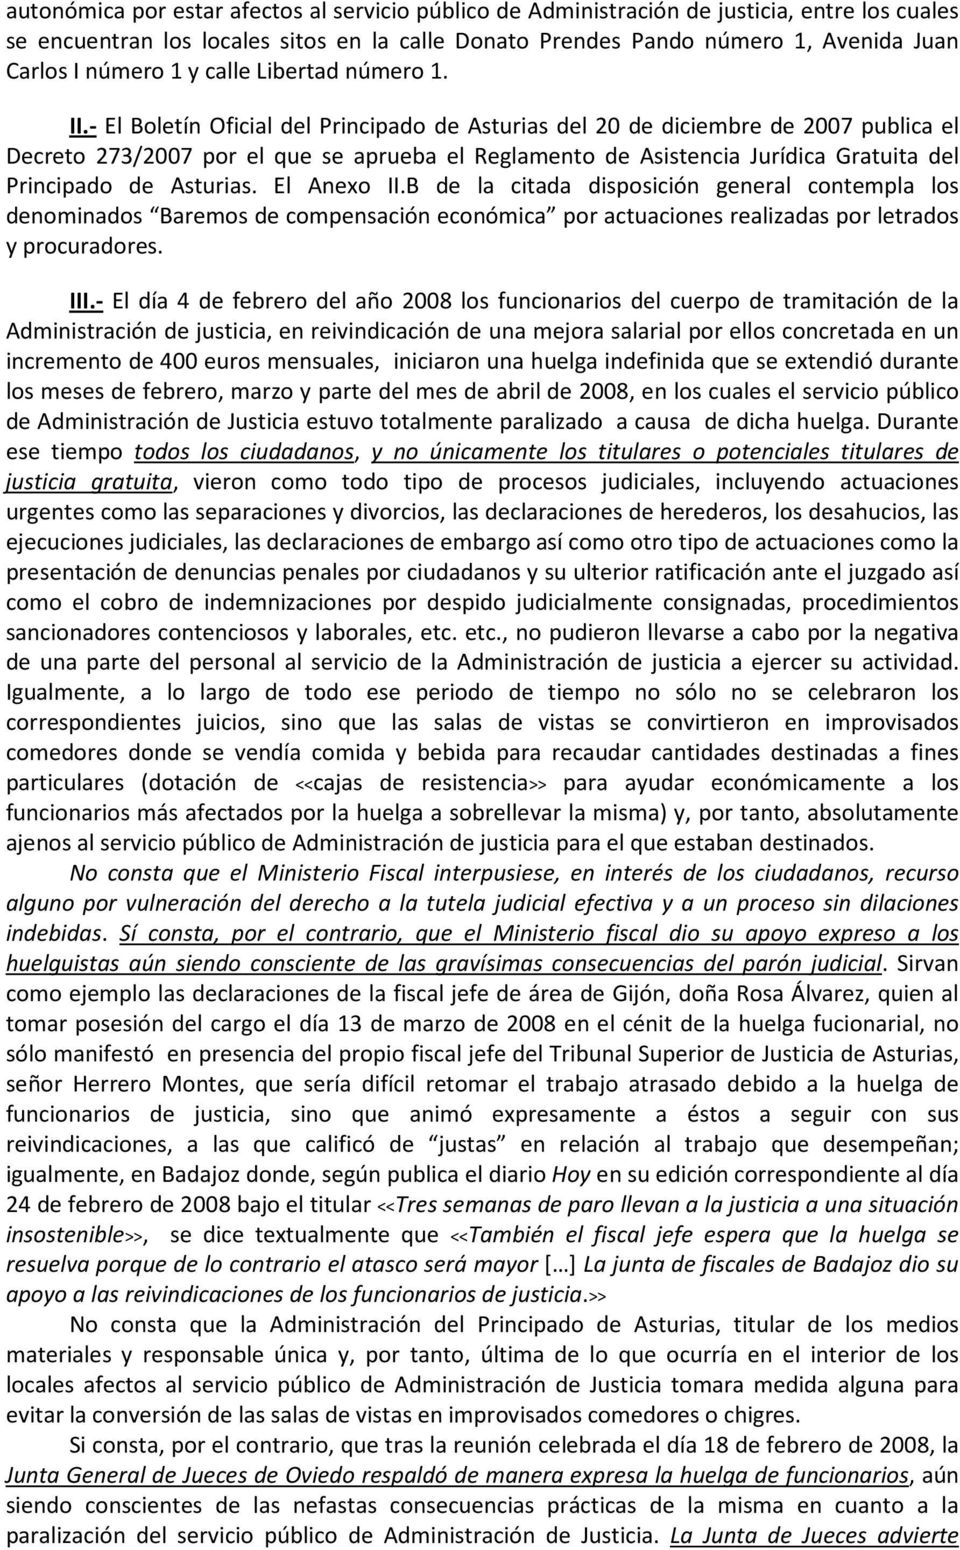 - El Boletín Oficial del Principado de Asturias del 20 de diciembre de 2007 publica el Decreto 273/2007 por el que se aprueba el Reglamento de Asistencia Jurídica Gratuita del Principado de Asturias.